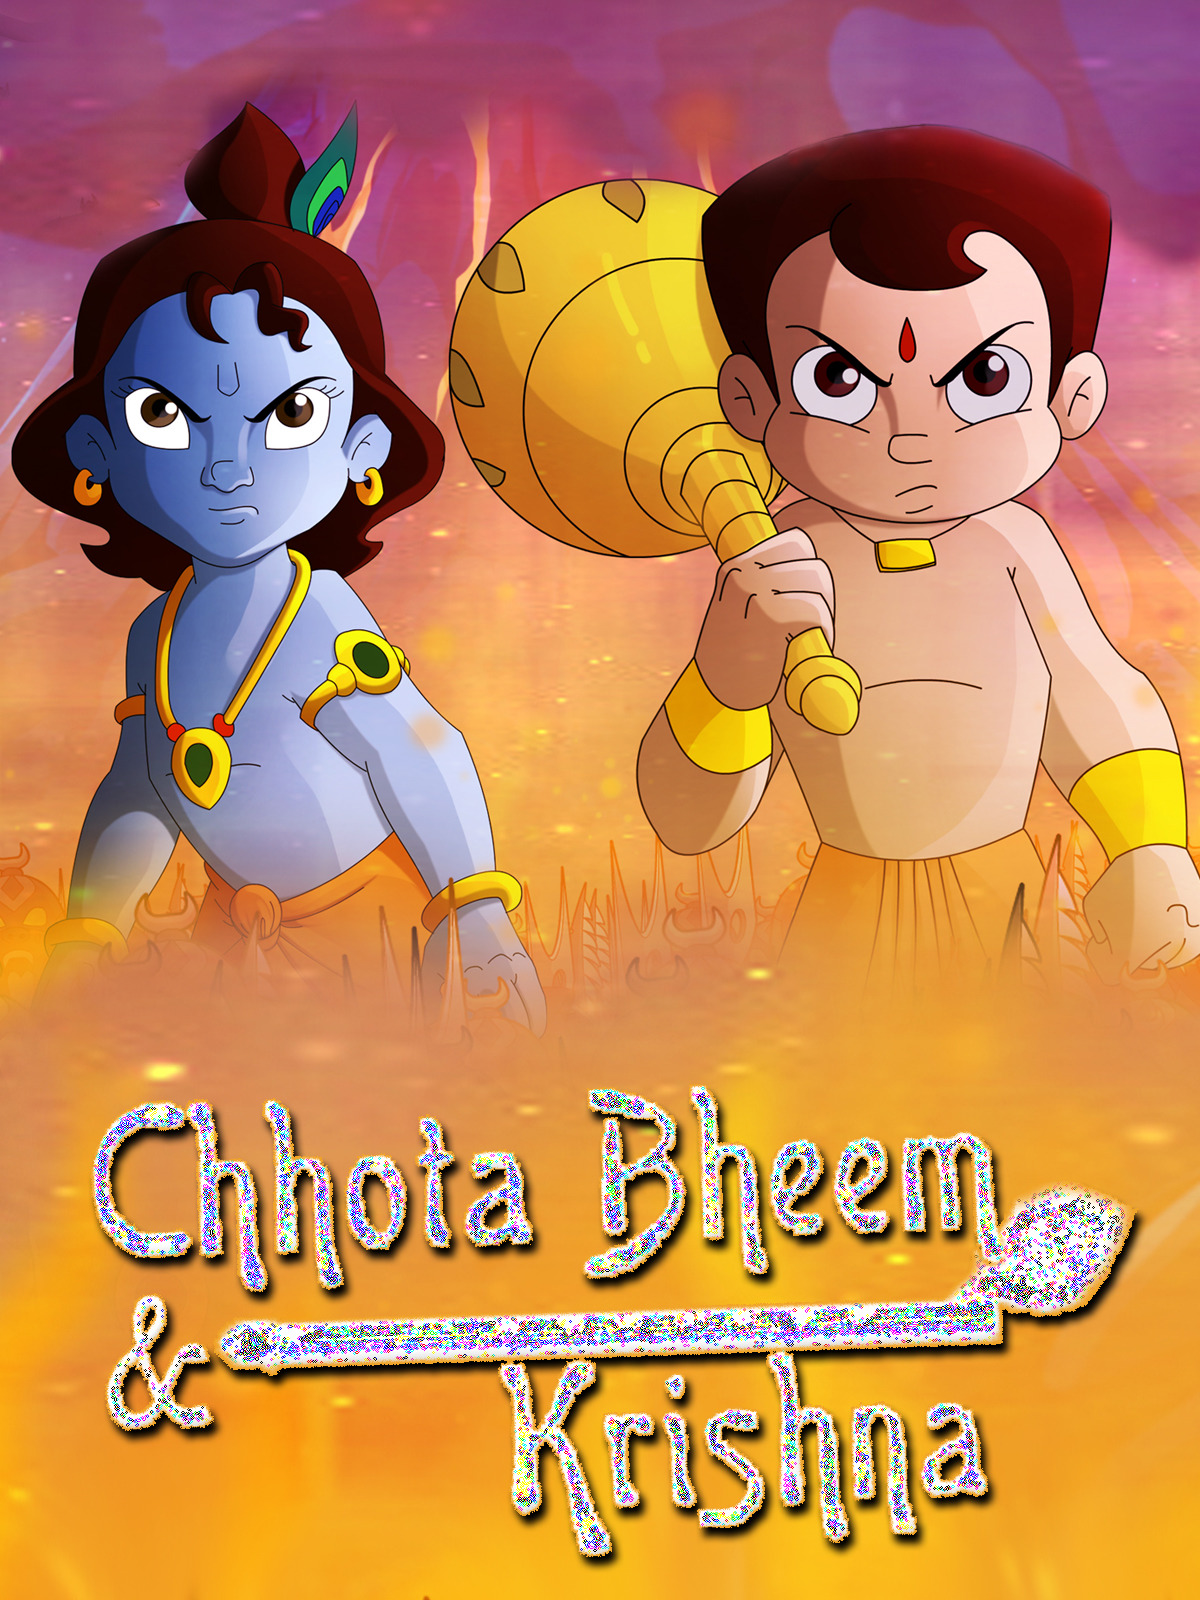 Prime Video: Chhotabheem aur Krishna